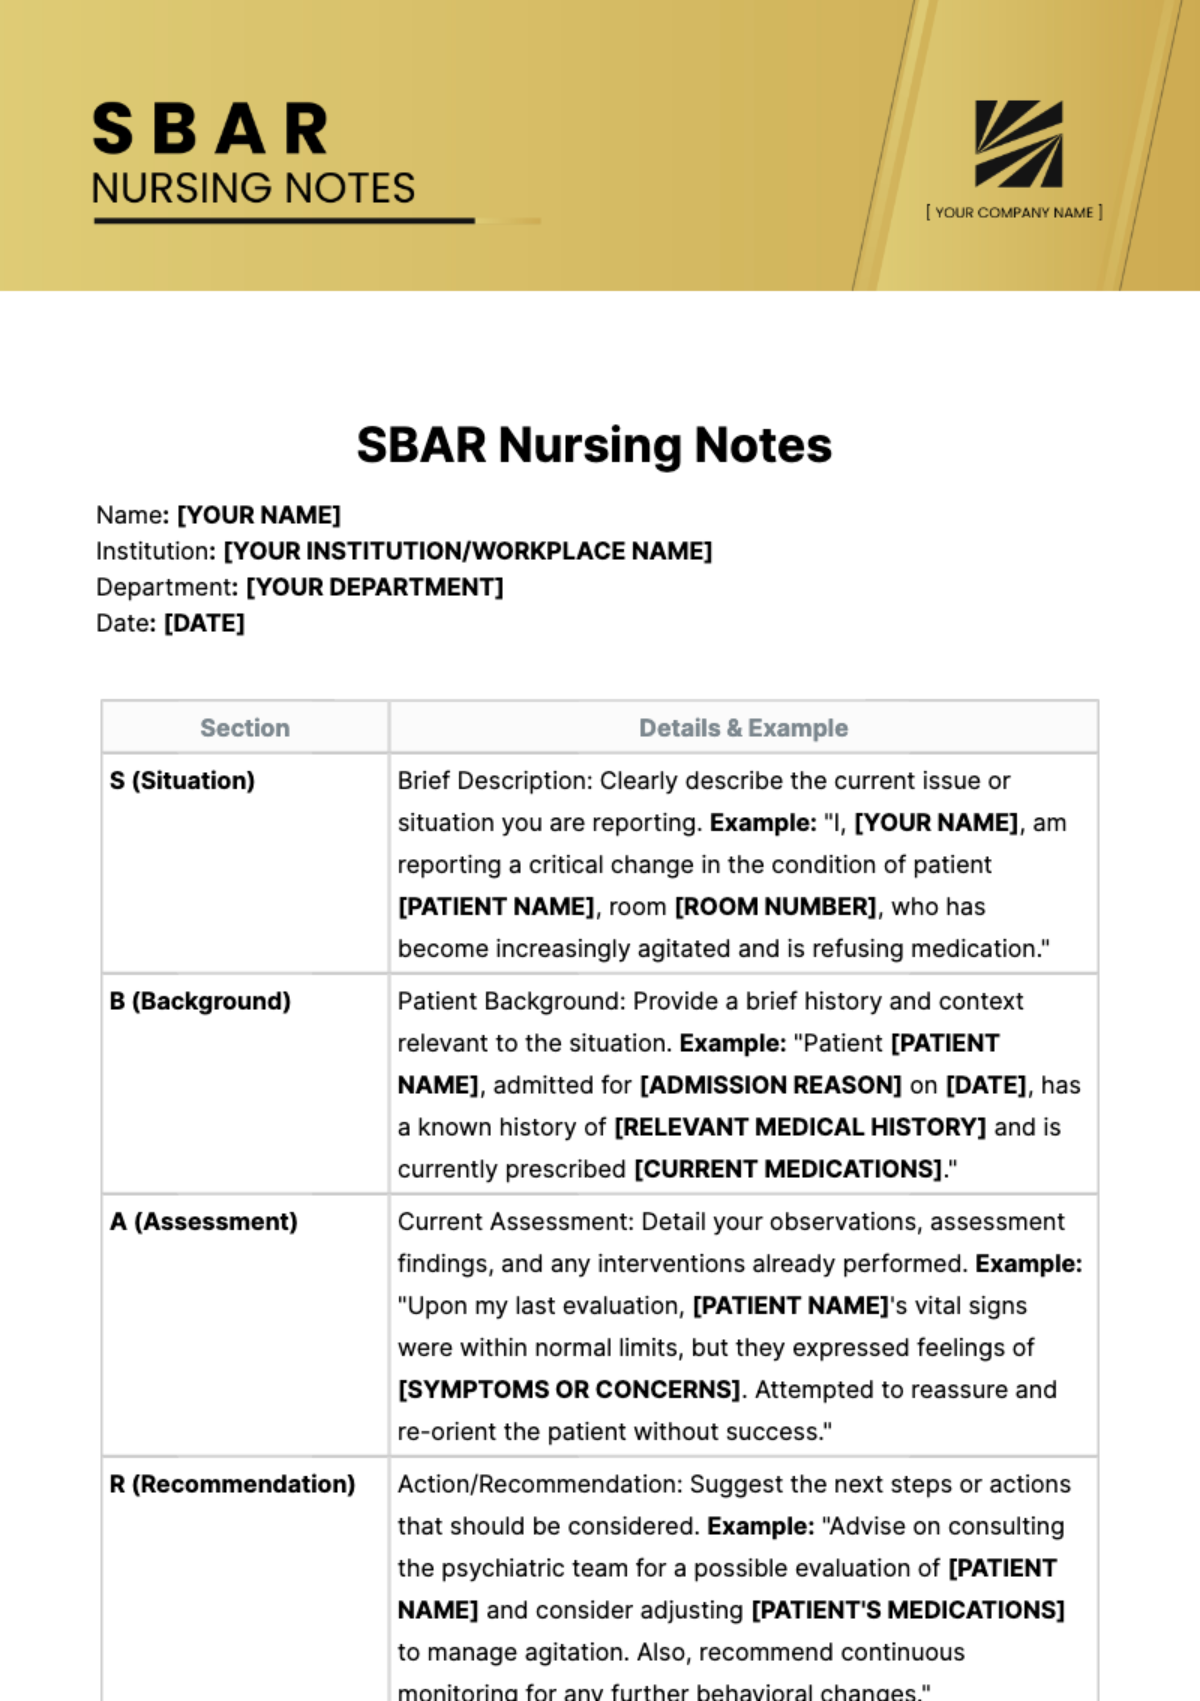 SBAR Nursing Notes Template